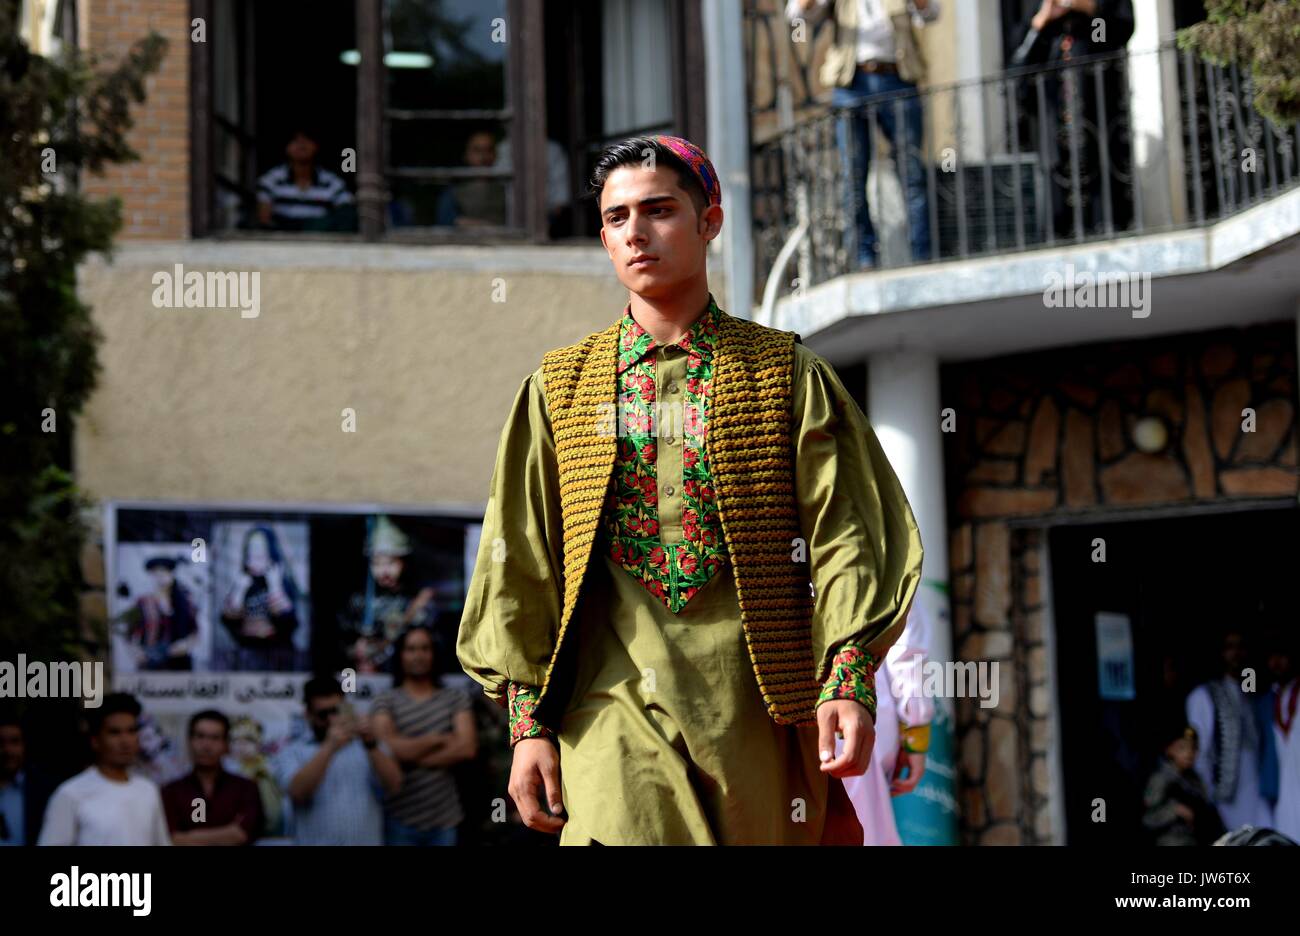 Kabul, Afghanistan. 10 Aug, 2017. Ein Modell präsentiert ein Kostüm während  einer Modenschau in Kabul, Afghanistan, am 10.08.2017. Mehr als 20 Modelle,  darunter sechs Mädchen in bunten Kleid bekleidet den Catwalk Zeremonie